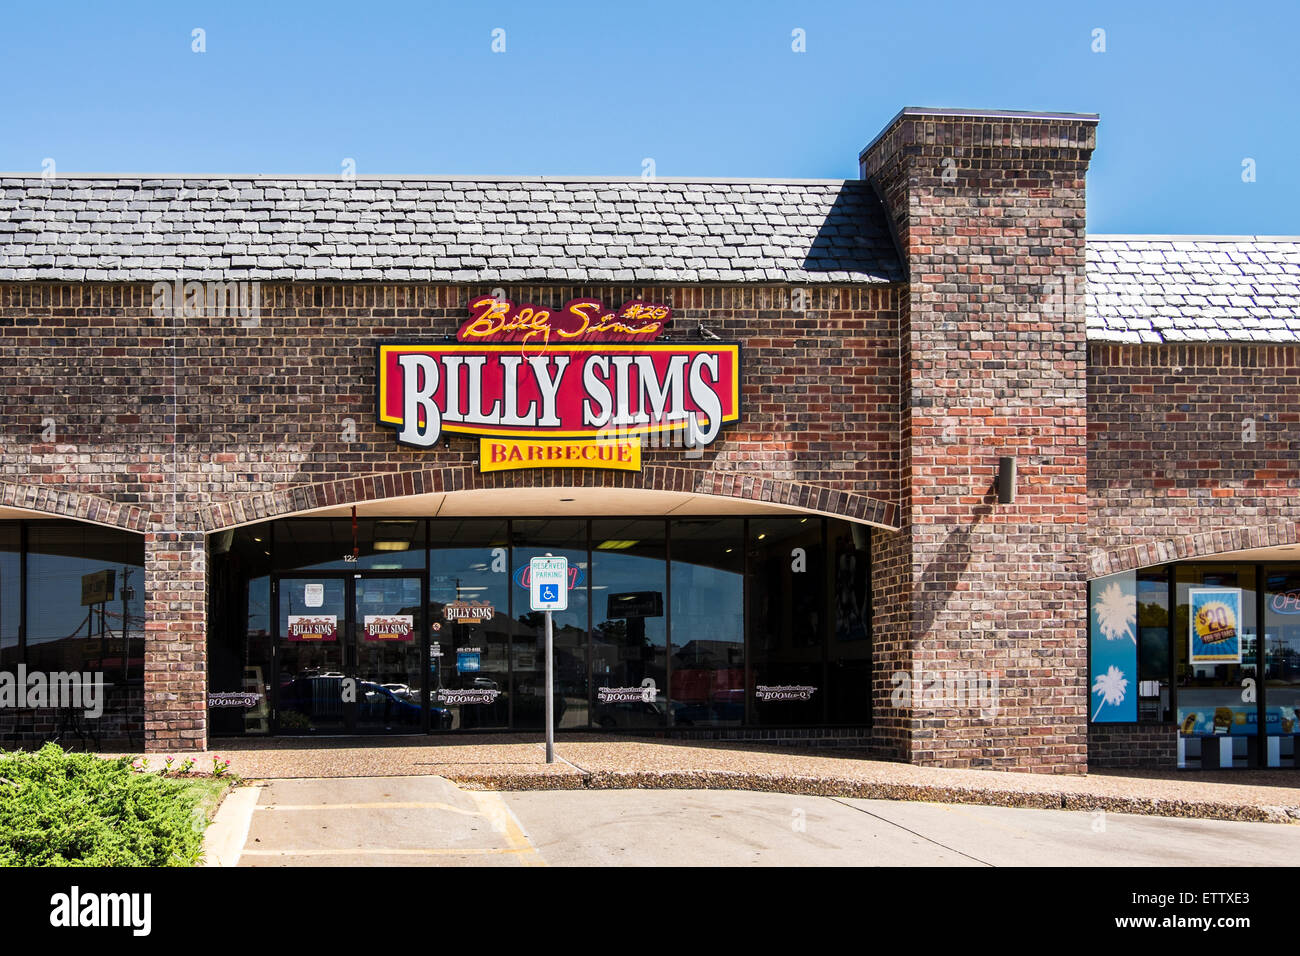 Billy Sims ristorante barbecue nella città di Oklahoma, Oklahoma, Stati Uniti d'America. Billy Sims è stato un eccezionale running back per Oklahoma University sotto coach Barry svizz. Foto Stock